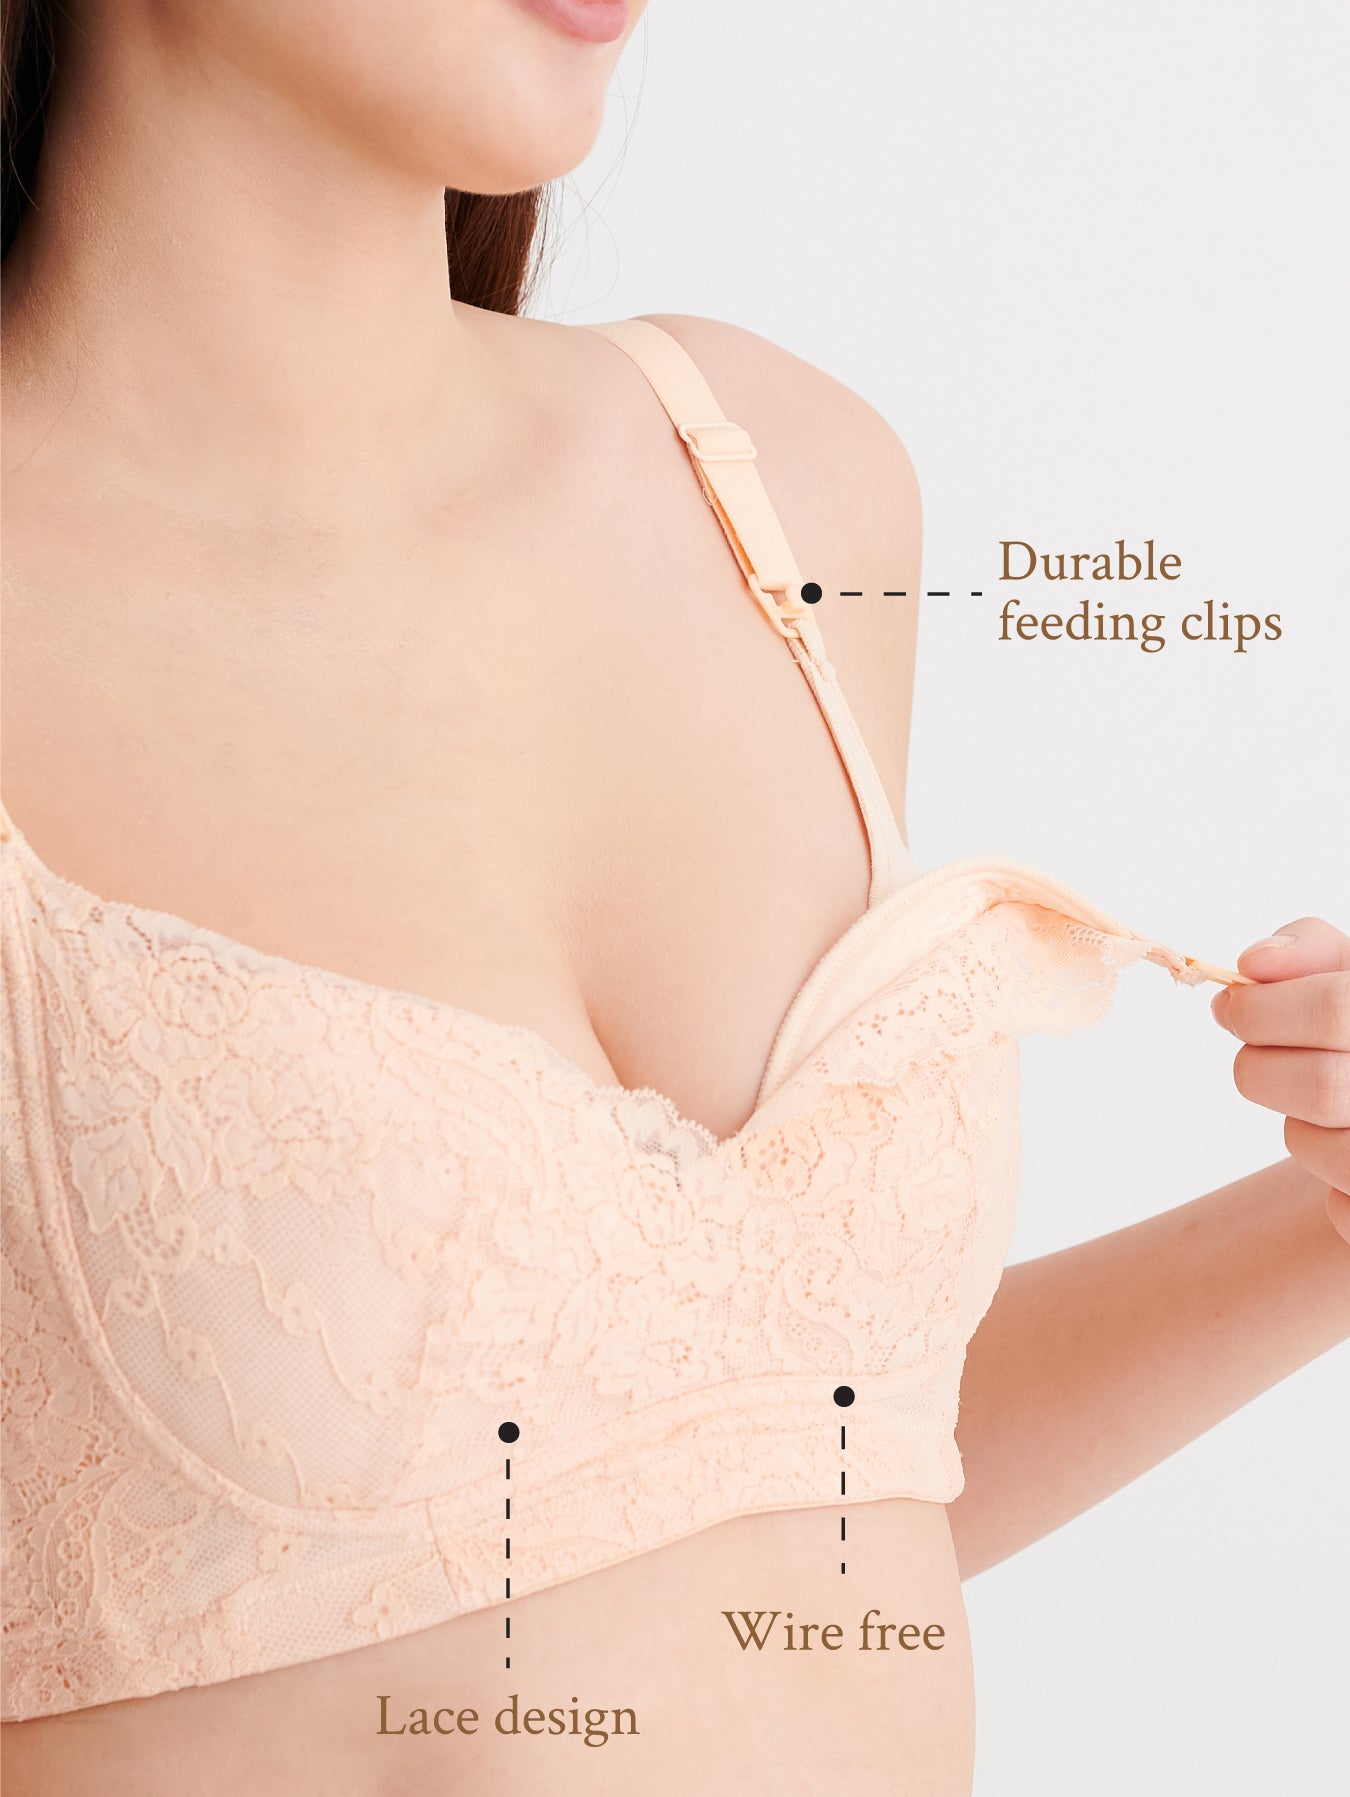 Premium nursing bra with superior comfort and support